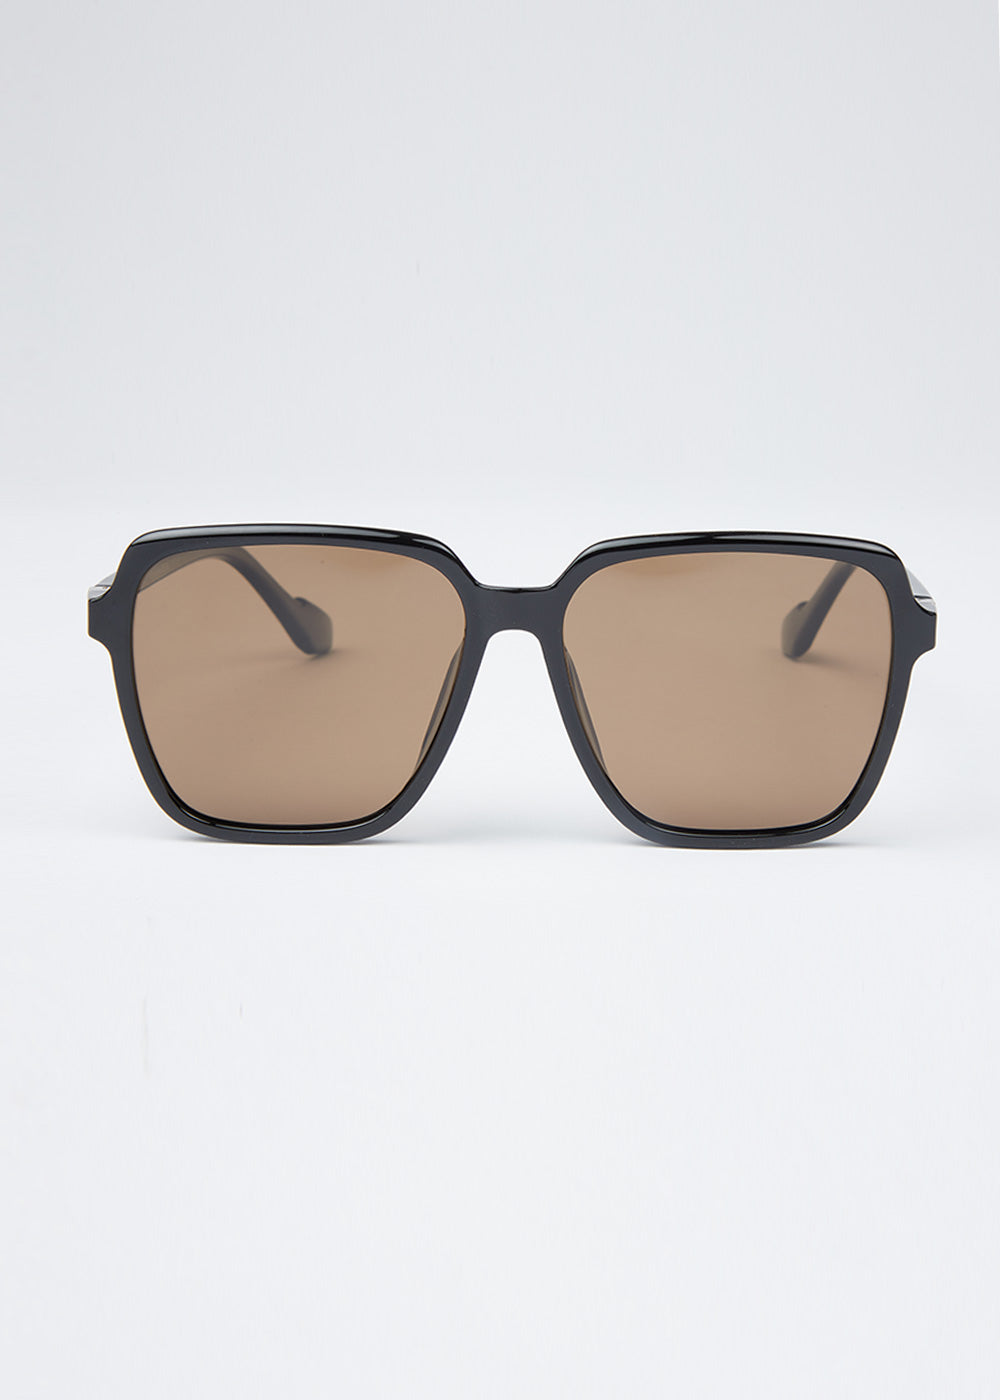 FlameTint Unisex Square Sunglasses